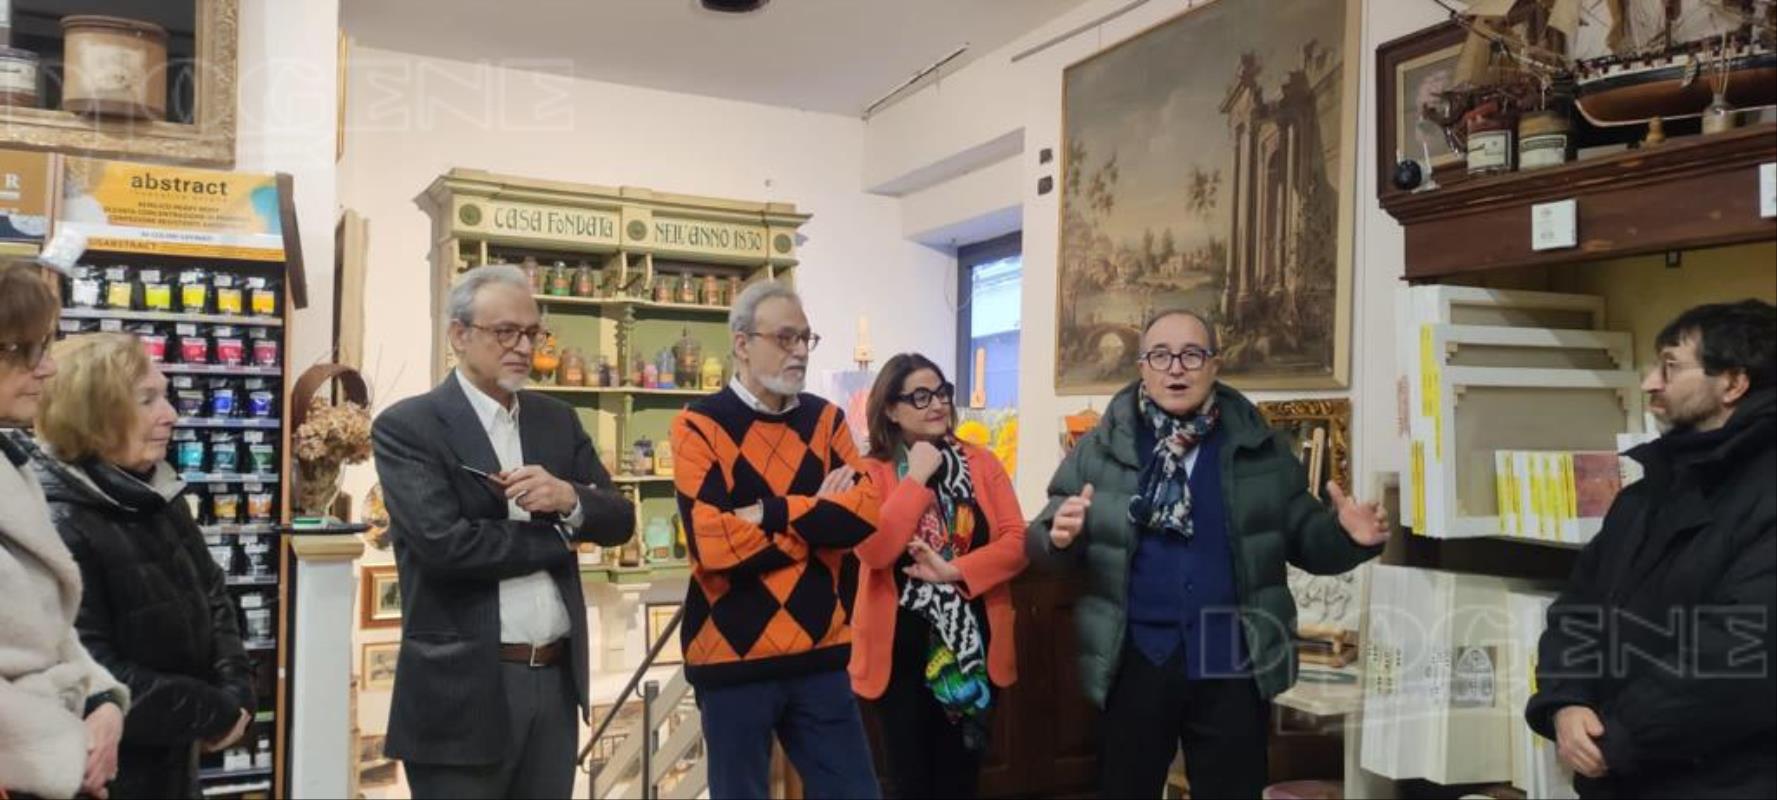 Gli artisti Alfonso e Nicola Vaccari espongono alla Galleria Manoni 